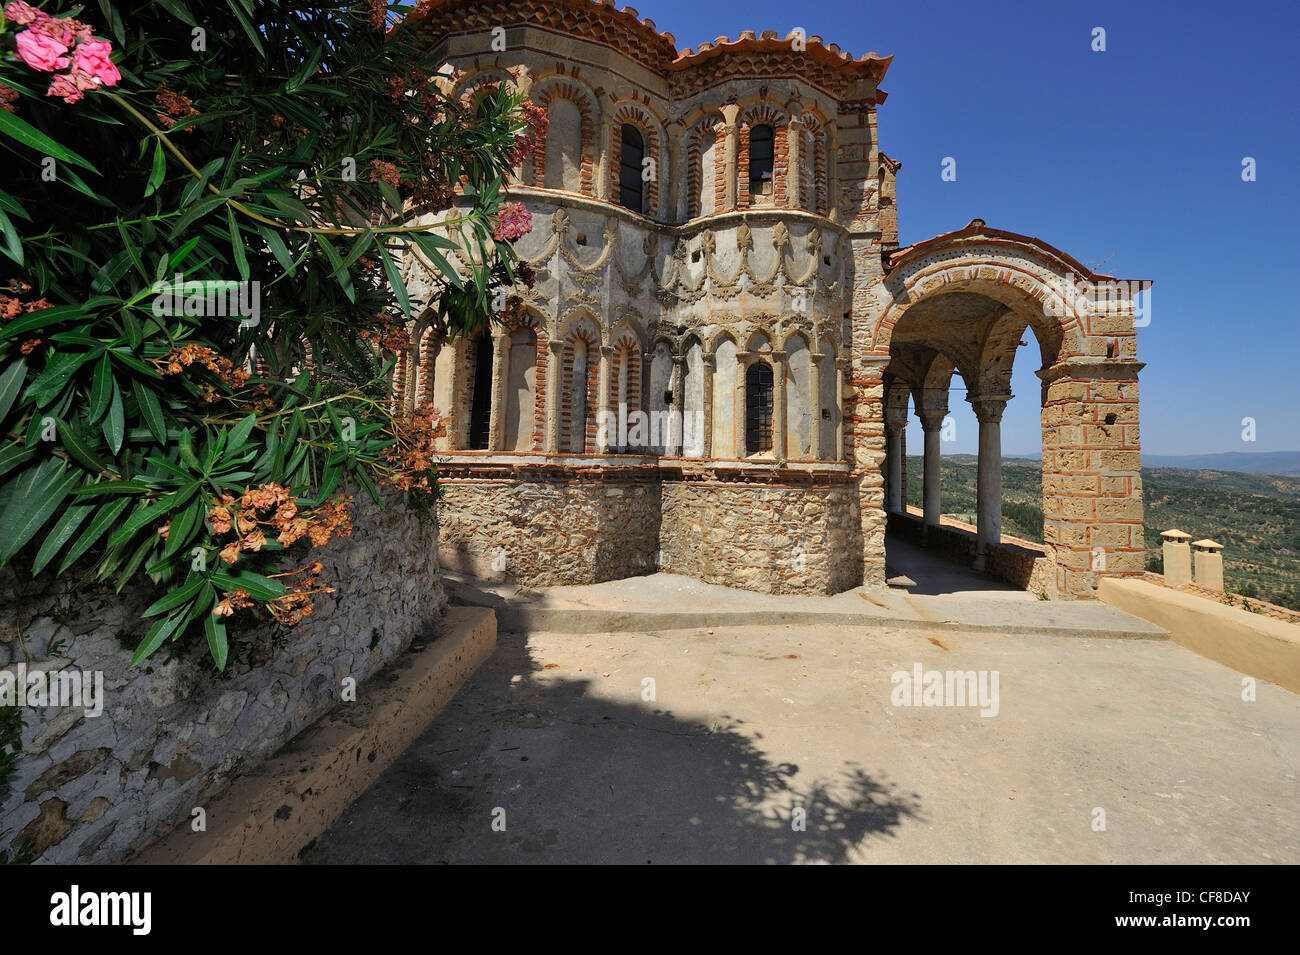 L'église de Pantanassa dans la magnifique ville byzantine de Mystras, Laconie, Péloponnèse. Grèce Banque D'Images